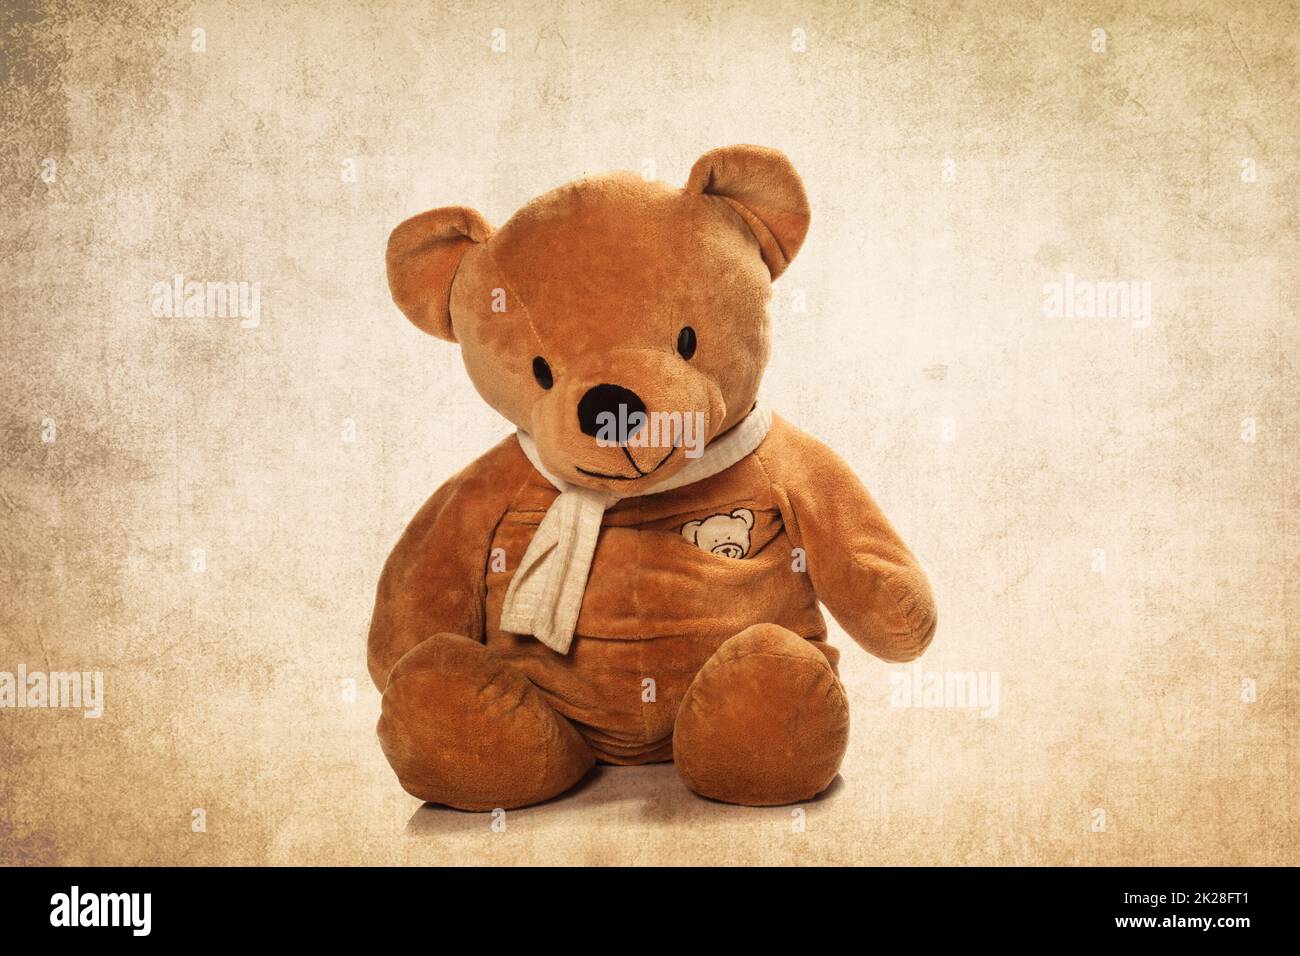 Cute Teddy bear Stock Photo